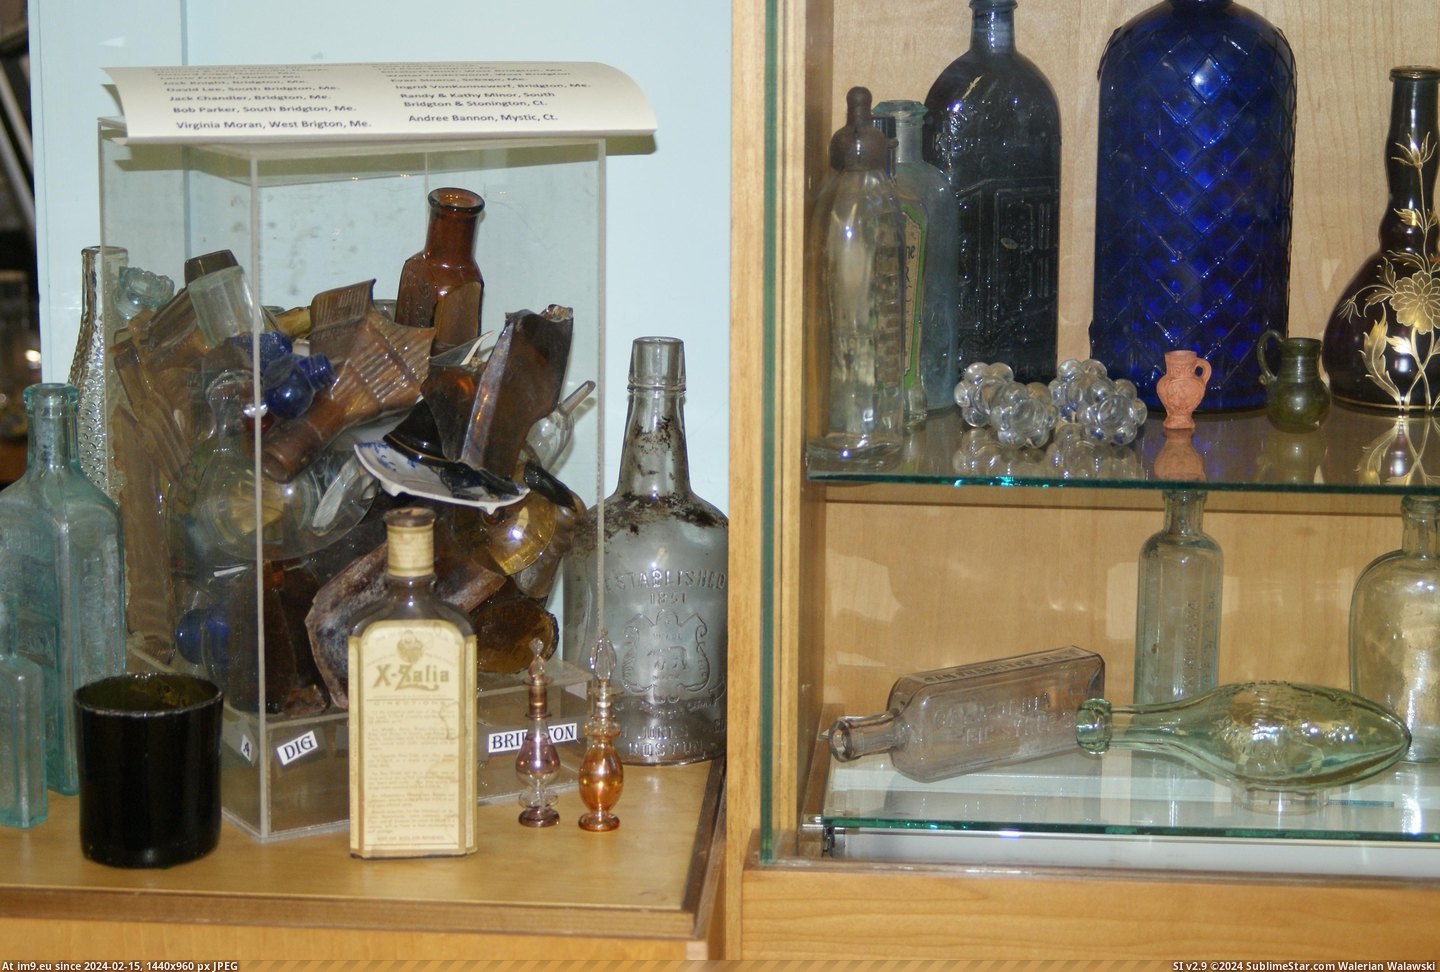 #Museum #Maine #Naples #Bottle MAINE BOTTLE MUSEUM NAPLES (14) Pic. (Bild von album MAINE BOTTLE MUSEUM))